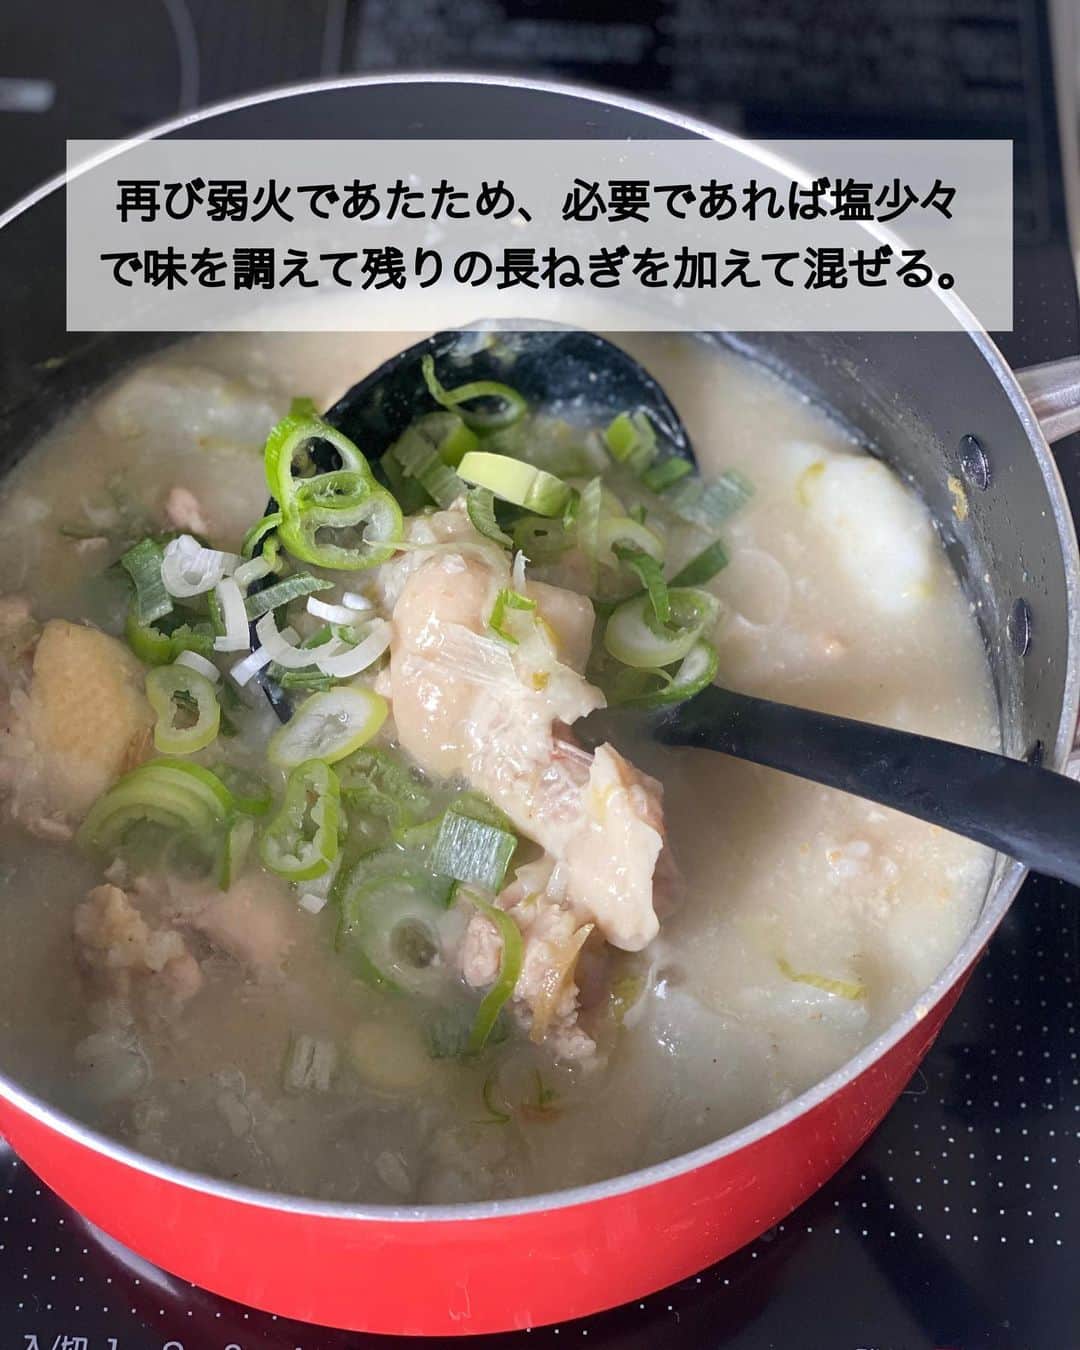 ちおりさんのインスタグラム写真 - (ちおりInstagram)「【煮るだけ簡単！参鶏湯風スープ】 ⁡ 他のレシピを見る→ @chiori.m.m をチェック✅ ⁡ ⁡ ━︎━︎━︎━︎━︎━︎━︎━︎━︎━︎━︎ 我が家のとろとろ参鶏湯 ⁡ Nadiaレシピ🆔 460895 ━︎━︎━︎━︎━︎━︎━︎━︎━︎━︎━︎ ⁡ ⁡ こんばんは(^ ^) ⁡ 今日は煮るだけで実は簡単♪ 参鶏湯風（サムゲタン）スープをご紹介させてください。 ⁡ 我が家では食べるおかずスープとして よく作るんですが、米の他に 大根と長いもで具材感と 自然なトロミをつけています。 ⁡ ⁡手羽元はほろほろ柔らか✨ お粥っぽいトロトロ感になるので 満足感があり、体調が良くない時や 食欲がない時でも食べやすいんです😊 ⁡ ⁡ 今週夫が体調不良でこれ2回ほど作ったけど🤲 やっと回復してきた感じ😌 ⁡ ⁡ 良かったら作ってみてください^ ^ ⁡ ⁡ ________________________________________ ⁡ ⁡ ✍︎ ✍︎recipe ✍︎ ✍︎ ⁡ 👩‍🌾【材料】2人分 •鶏手羽元………8本 •大根………………150g •長いも……………100g •長ねぎ……………1/2本 •しょうが…………1かけ（20g） Aもち米（無ければ米）………大さじ3 A水……………………………………800㎖ A酒…………………………………大さじ3 Aおろしにんにく………………小さじ1 B鶏ガラスープの素…………大さじ1 B砂糖、塩………………………各小さじ1/2 •すりごま…………………………大さじ2 •好みでごま油…………………少々 ⁡ ⁡ ⁡ ________________________________________ ⁡ ⁡ ⁡ 👩‍🍳【作り方】 ①大根は皮をむき大きめの乱切りにする。長ねぎは小口切りにする。しょうがはせん切りにする。 ⁡ ②鍋に【A】と鶏手羽元、大根、長ねぎの1/2量、しょうがを入れて中火にかけ、沸騰してきたらアクをとる。 ⁡ ③【B】を加えて蓋を少しずらしてのせ、弱火で20分煮る。 ⁡ ④長いもは皮をむきポリ袋に入れて叩き、粗めに割る。鍋に加え、すりごまをふり、再び蓋をのせてさらに10分ほど煮たら火からおろし、粗熱がとれるまでおく。（長いもを加えたら時々箸で混ぜてください。冷めてくると手羽元が柔らかくなります。） ⁡ ⑤再び弱火であたため、必要であれば塩少々で味を調えて残りの長ねぎを加えて混ぜる。器に盛り、好みでごま油をたらす。 ⁡ ⁡ ________________________________________ ⁡ ⁡ ⁡ 📝【POINT】 •塩を塩麹で代用するとより美味しくなります。 ⁡ •しょうがはお好みで増やしてください。 ⁡ •おろしにんにくはチューブで代用OKです。 ⁡ •長いもは省いてもOKです。 ⁡ •すりごまは省いてもOKです。 ⁡ •仕上げに甘栗を加えても美味しいです。 ⁡ •トロミがつきすぎてしまったら水を足して調整してください。 ⁡ ⁡ ⁡ ≡︎≡︎≡︎≡︎≡︎≡︎≡︎≡︎≡︎≡︎≡︎≡︎≡︎≡︎≡︎≡︎≡︎≡︎≡︎≡︎≡︎≡︎≡︎≡︎≡︎≡︎≡︎≡︎≡︎≡︎≡︎≡︎≡︎≡︎ 【✅新刊レシピ本のお知らせ】 📕ちおり流くり返し作りたいおかず 🙇🏻‍♀️おかげ様で書籍累計10万部を突破しました。 ⁡ 全国の書店、Amazon、楽天ブックス 宝島チャンネルにて発売中です。 ⁡ ➤ ➤ ➤ @chiori.m.m のストーリーハイライト。 プロフィールのリンクからご覧いただけます😊 📗ちおりの簡単絶品おかず１、２ 既刊もぜひご覧いただきたいです。 ⁡ ≡︎≡︎≡︎≡︎≡︎≡︎≡︎≡︎≡︎≡︎≡︎≡︎≡︎≡︎≡︎≡︎≡︎≡︎≡︎≡︎≡︎≡︎≡︎≡︎≡︎≡︎≡︎≡︎≡︎≡︎≡︎≡︎≡︎≡︎ ⁡ ⁡ 最後までご覧いただきありがとうございます☺️ ⁑ ⁑ ⁑ ⁑ ⁑ ⁑ ⁑ ⁑ #参鶏湯 #参鶏湯レシピ   #Nadiaレシピ #Nadiaartist  #japanesefood   #食卓 #献立 #簡単ごはん #野菜レシピ  #簡単レシピ #節約レシピ #時短レシピ  #日々の暮らし #野菜スープ #スープレシピ   #夕飯レシピ #お弁当レシピ  #料理初心者  #おつまみレシピ #具沢山スープ  #手羽元 #手羽元レシピ #料理レシピ  #大根レシピ #長いも #鶏肉レシピ」5月20日 21時34分 - chiori.m.m